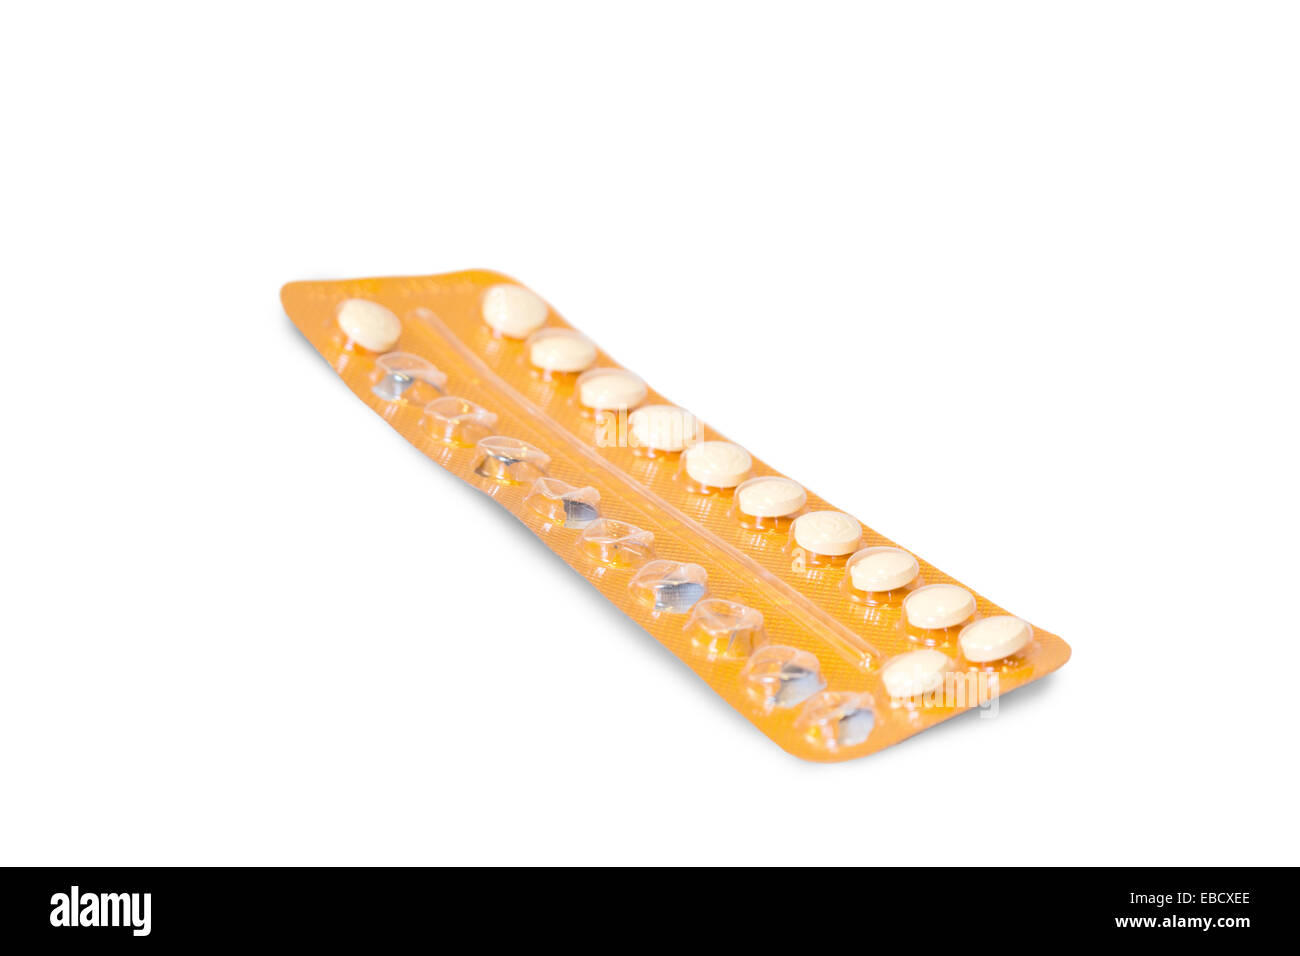 Primo piano di controllo delle nascite pillole in una parzialmente utilizzati blister, isolato su sfondo bianco Foto Stock